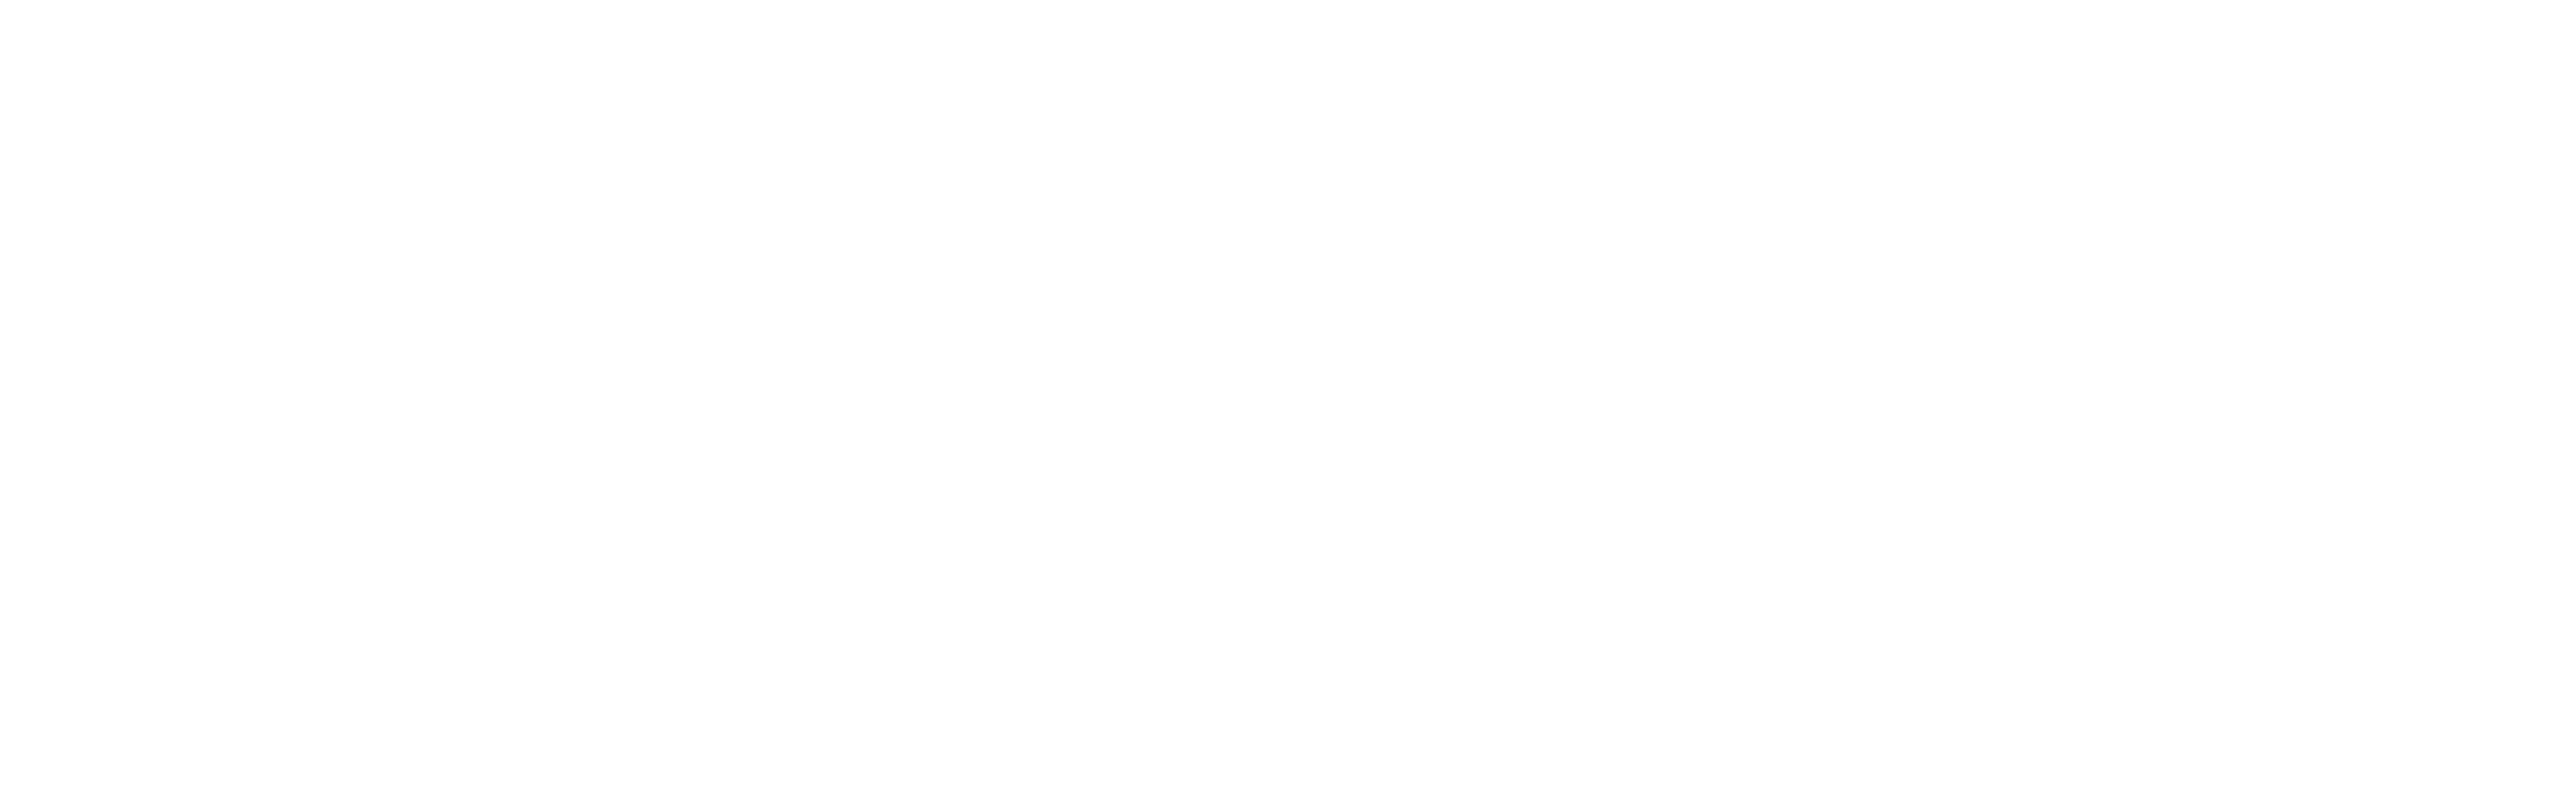 logo Cói Design